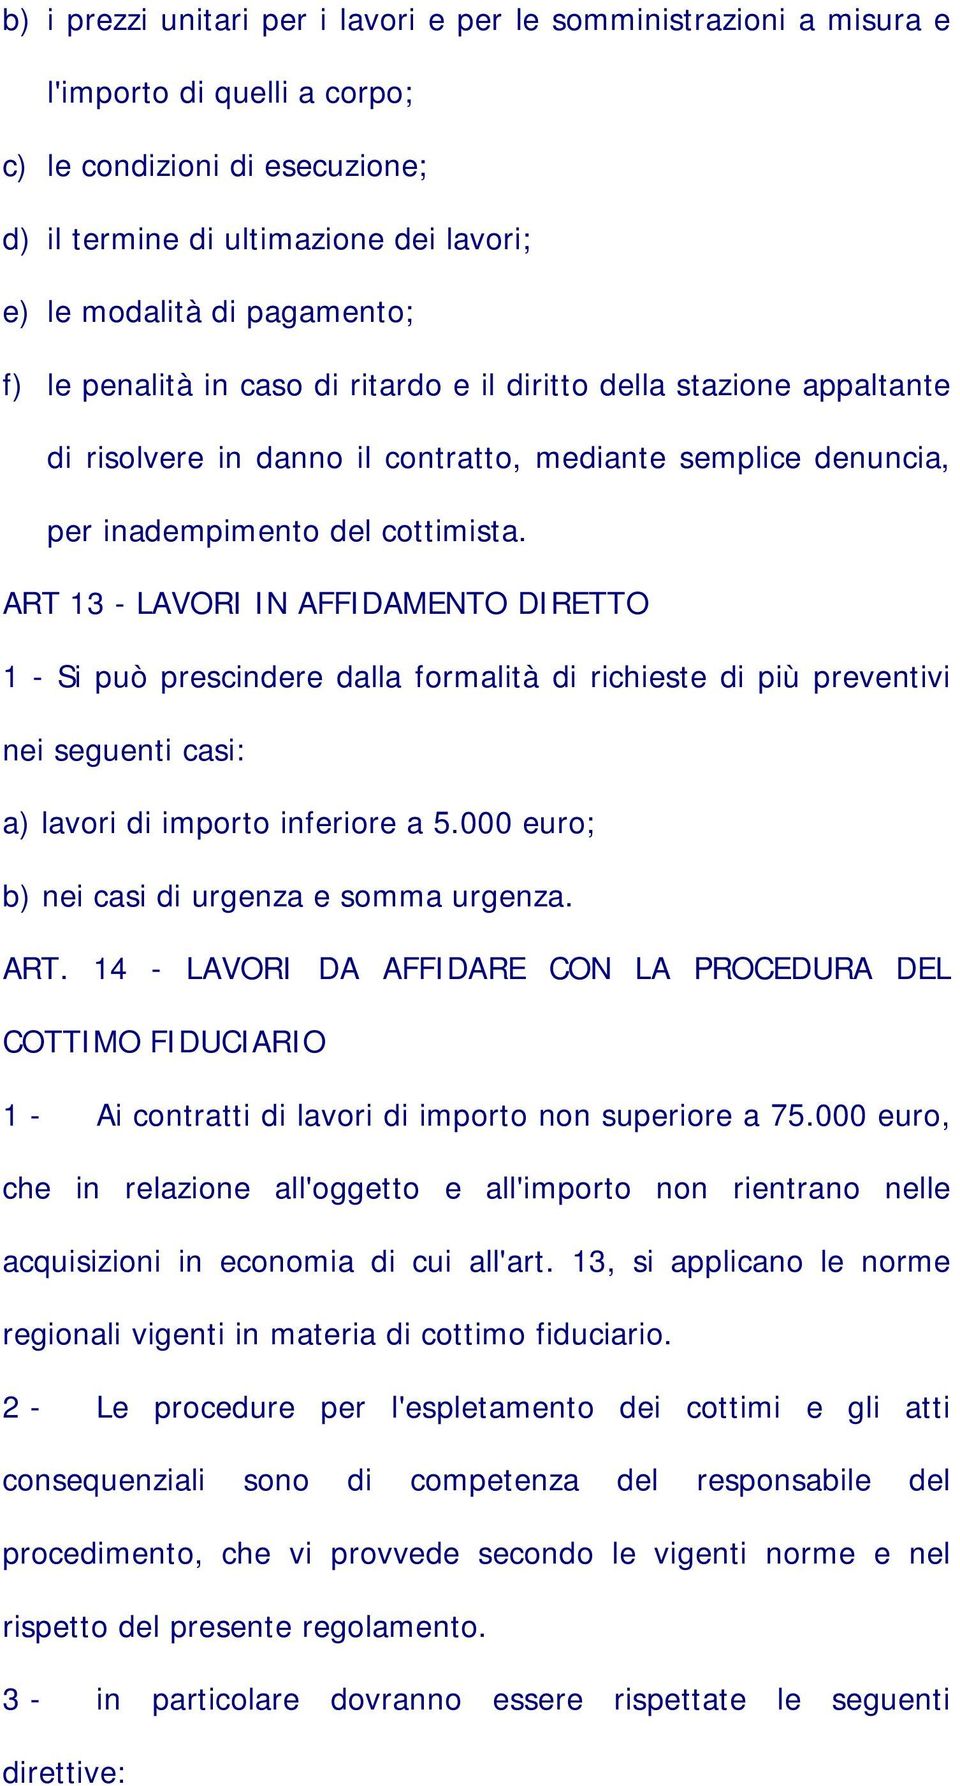 ART 13 - LAVORI IN AFFIDAMENTO DIRETTO 1 - Si può prescindere dalla formalità di richieste di più preventivi nei seguenti casi: a) lavori di importo inferiore a 5.